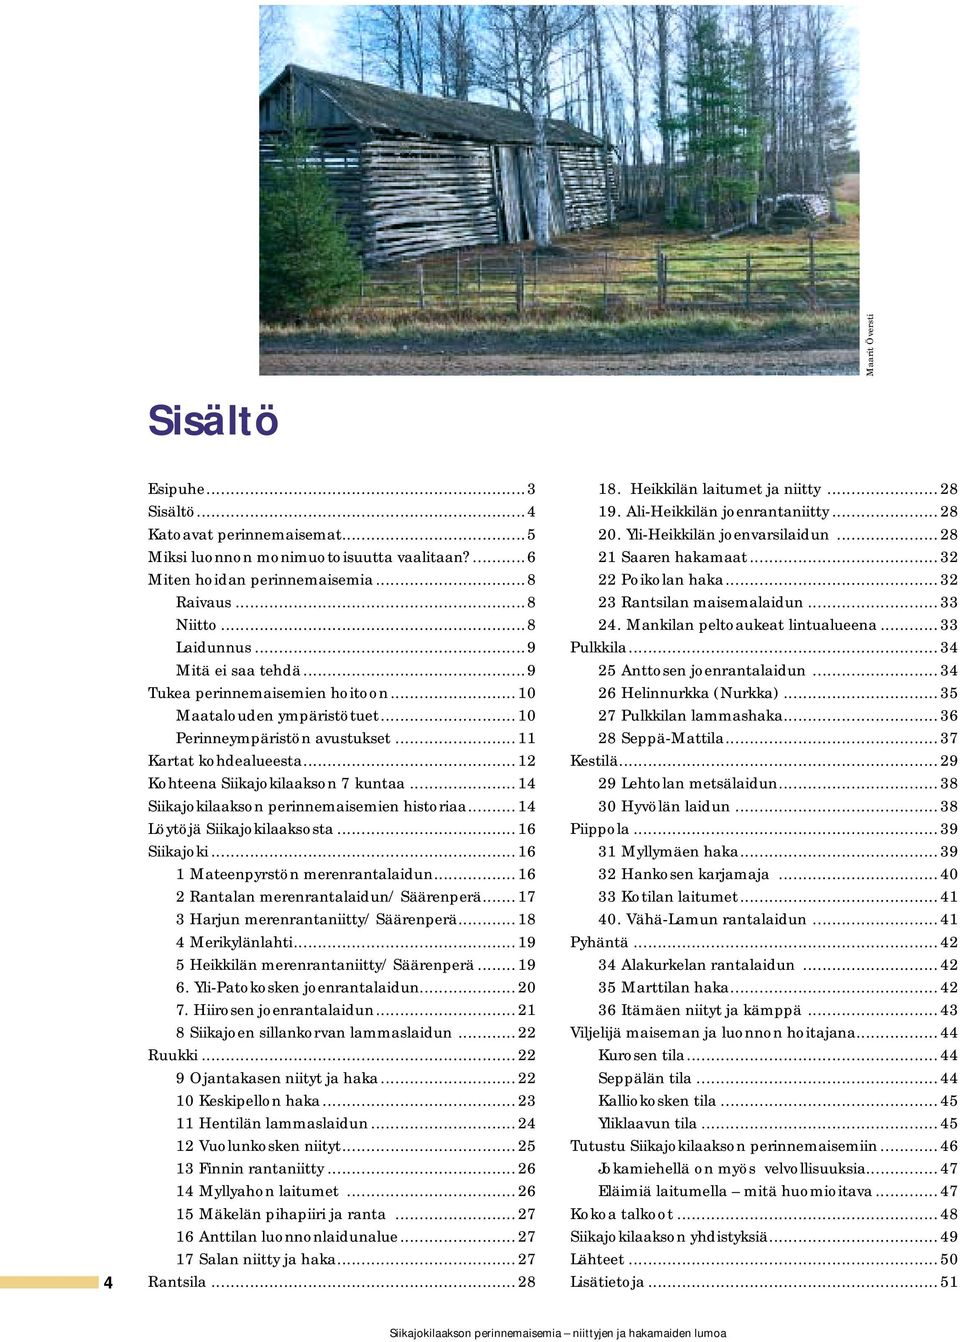 ..14 Siikajokilaakson perinnemaisemien historiaa...14 Löytöjä Siikajokilaaksosta...16 Siikajoki...16 1 Mateenpyrstön merenrantalaidun...16 2 Rantalan merenrantalaidun/ Säärenperä.